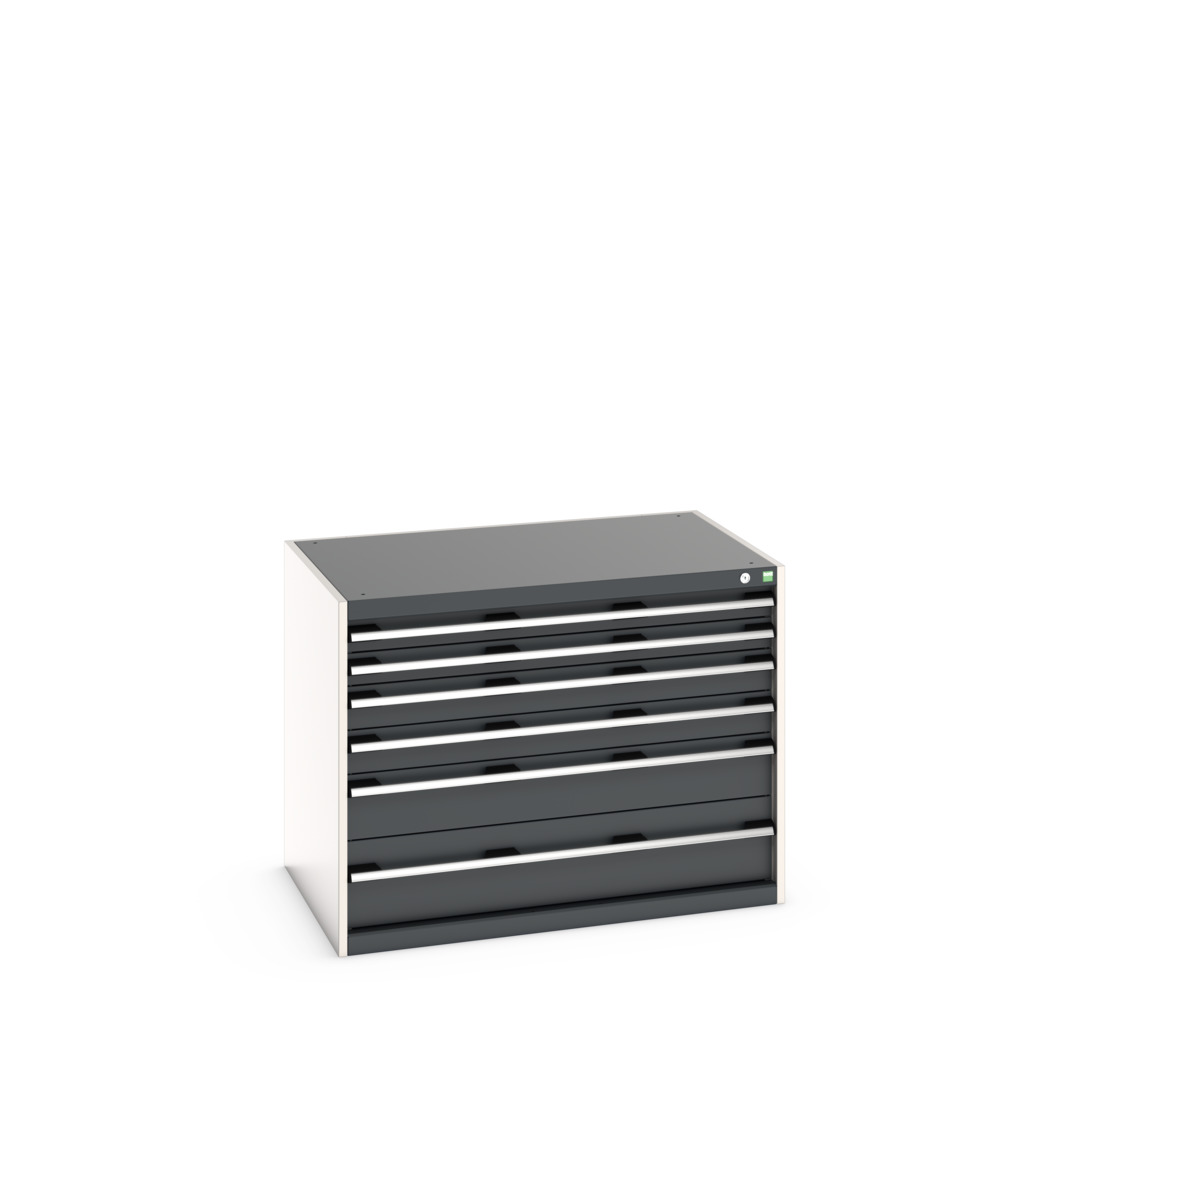 40029086.19V - cubio drawer cabinet